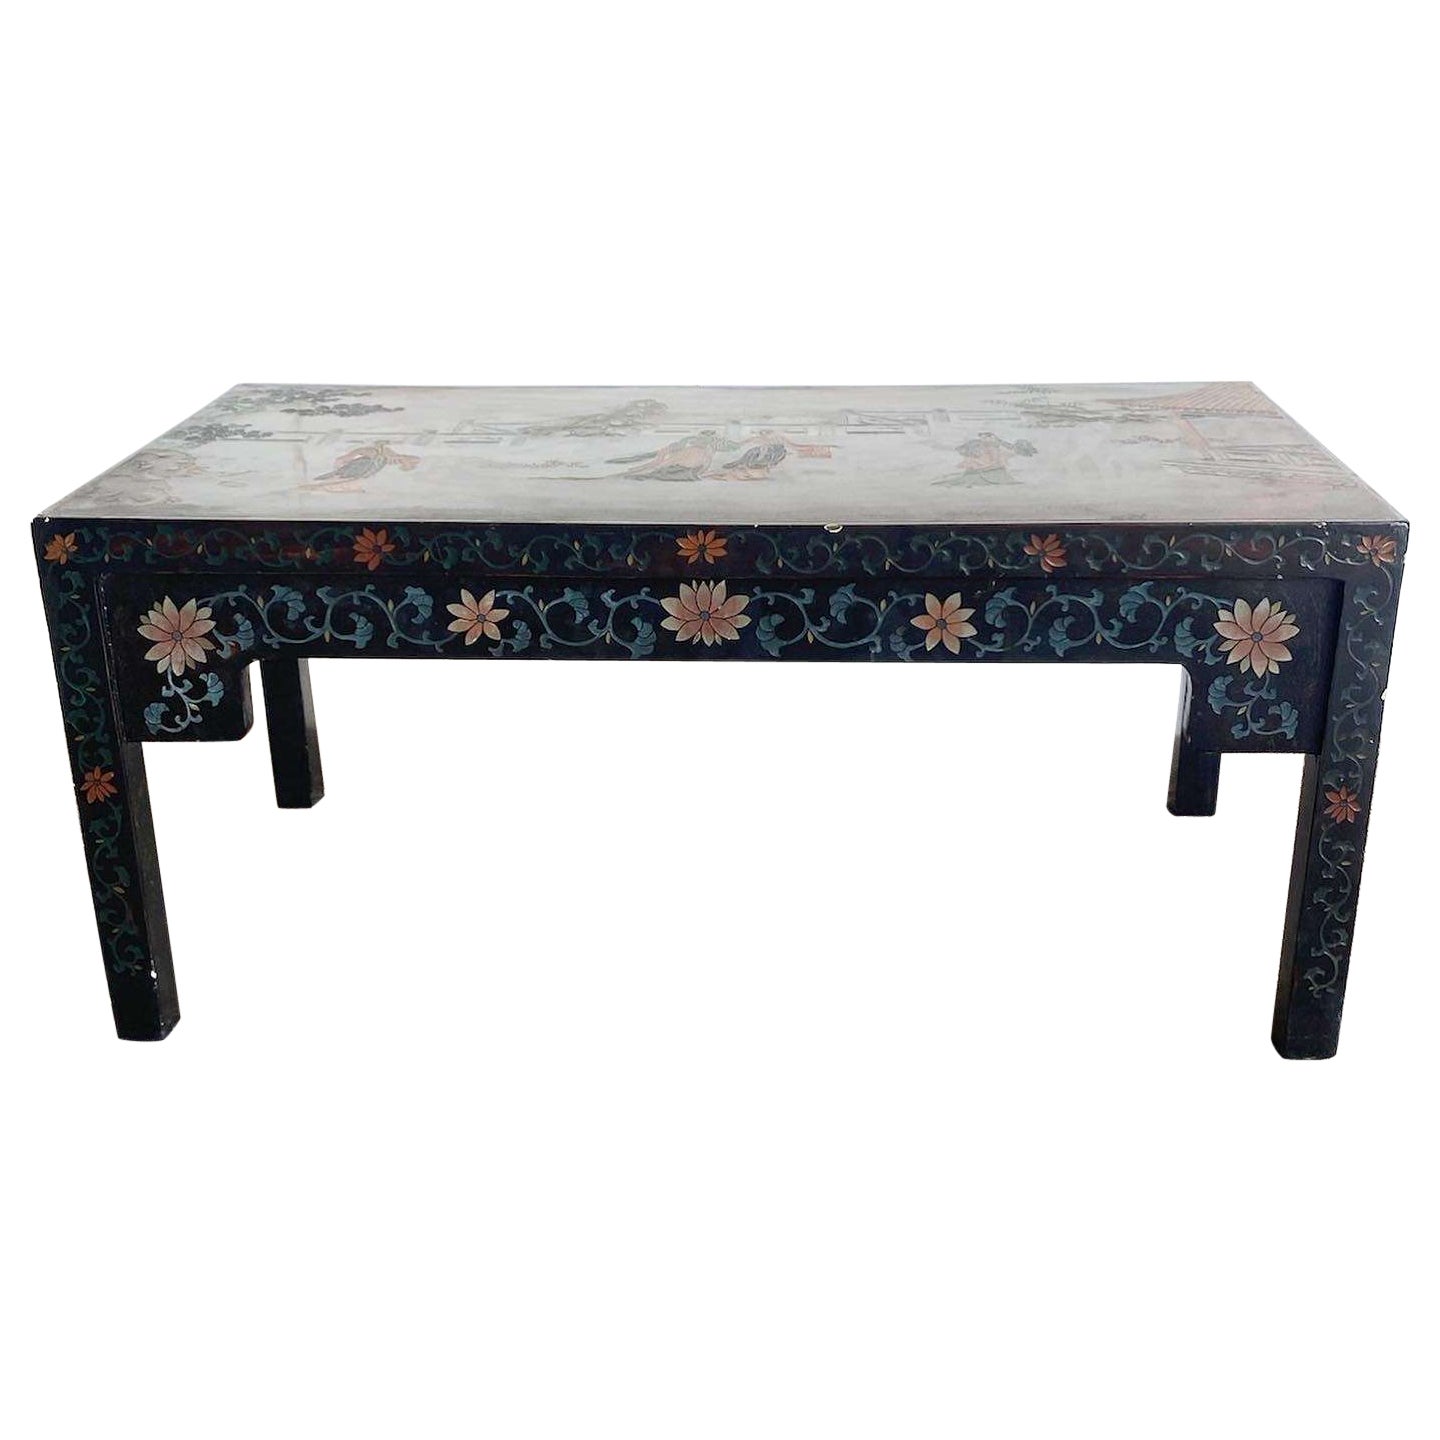 Table basse rectangulaire chinoise sculptée et peinte à la main en laque noire